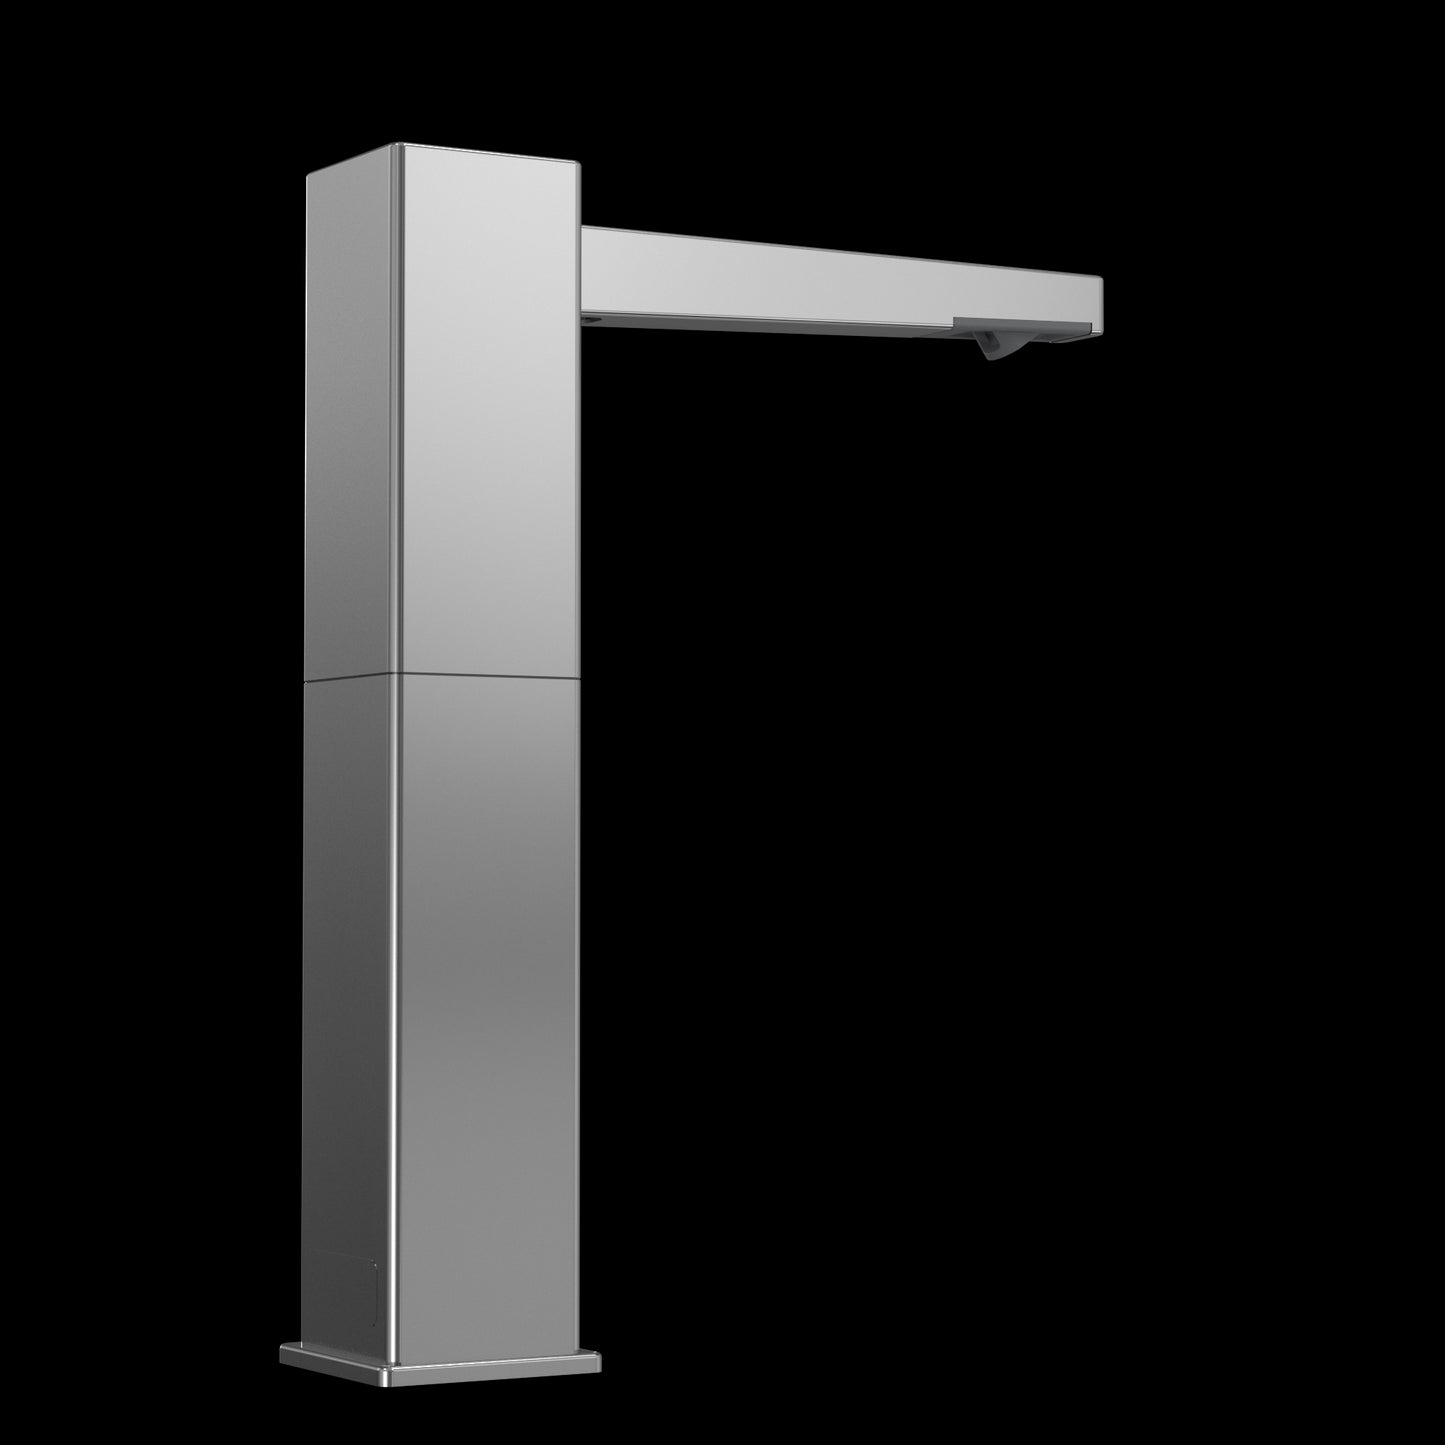 TES201AF#CP - Square M Touchless Foam Soap Dispenser - 3L Reservoir and 1 Spout - Chrome